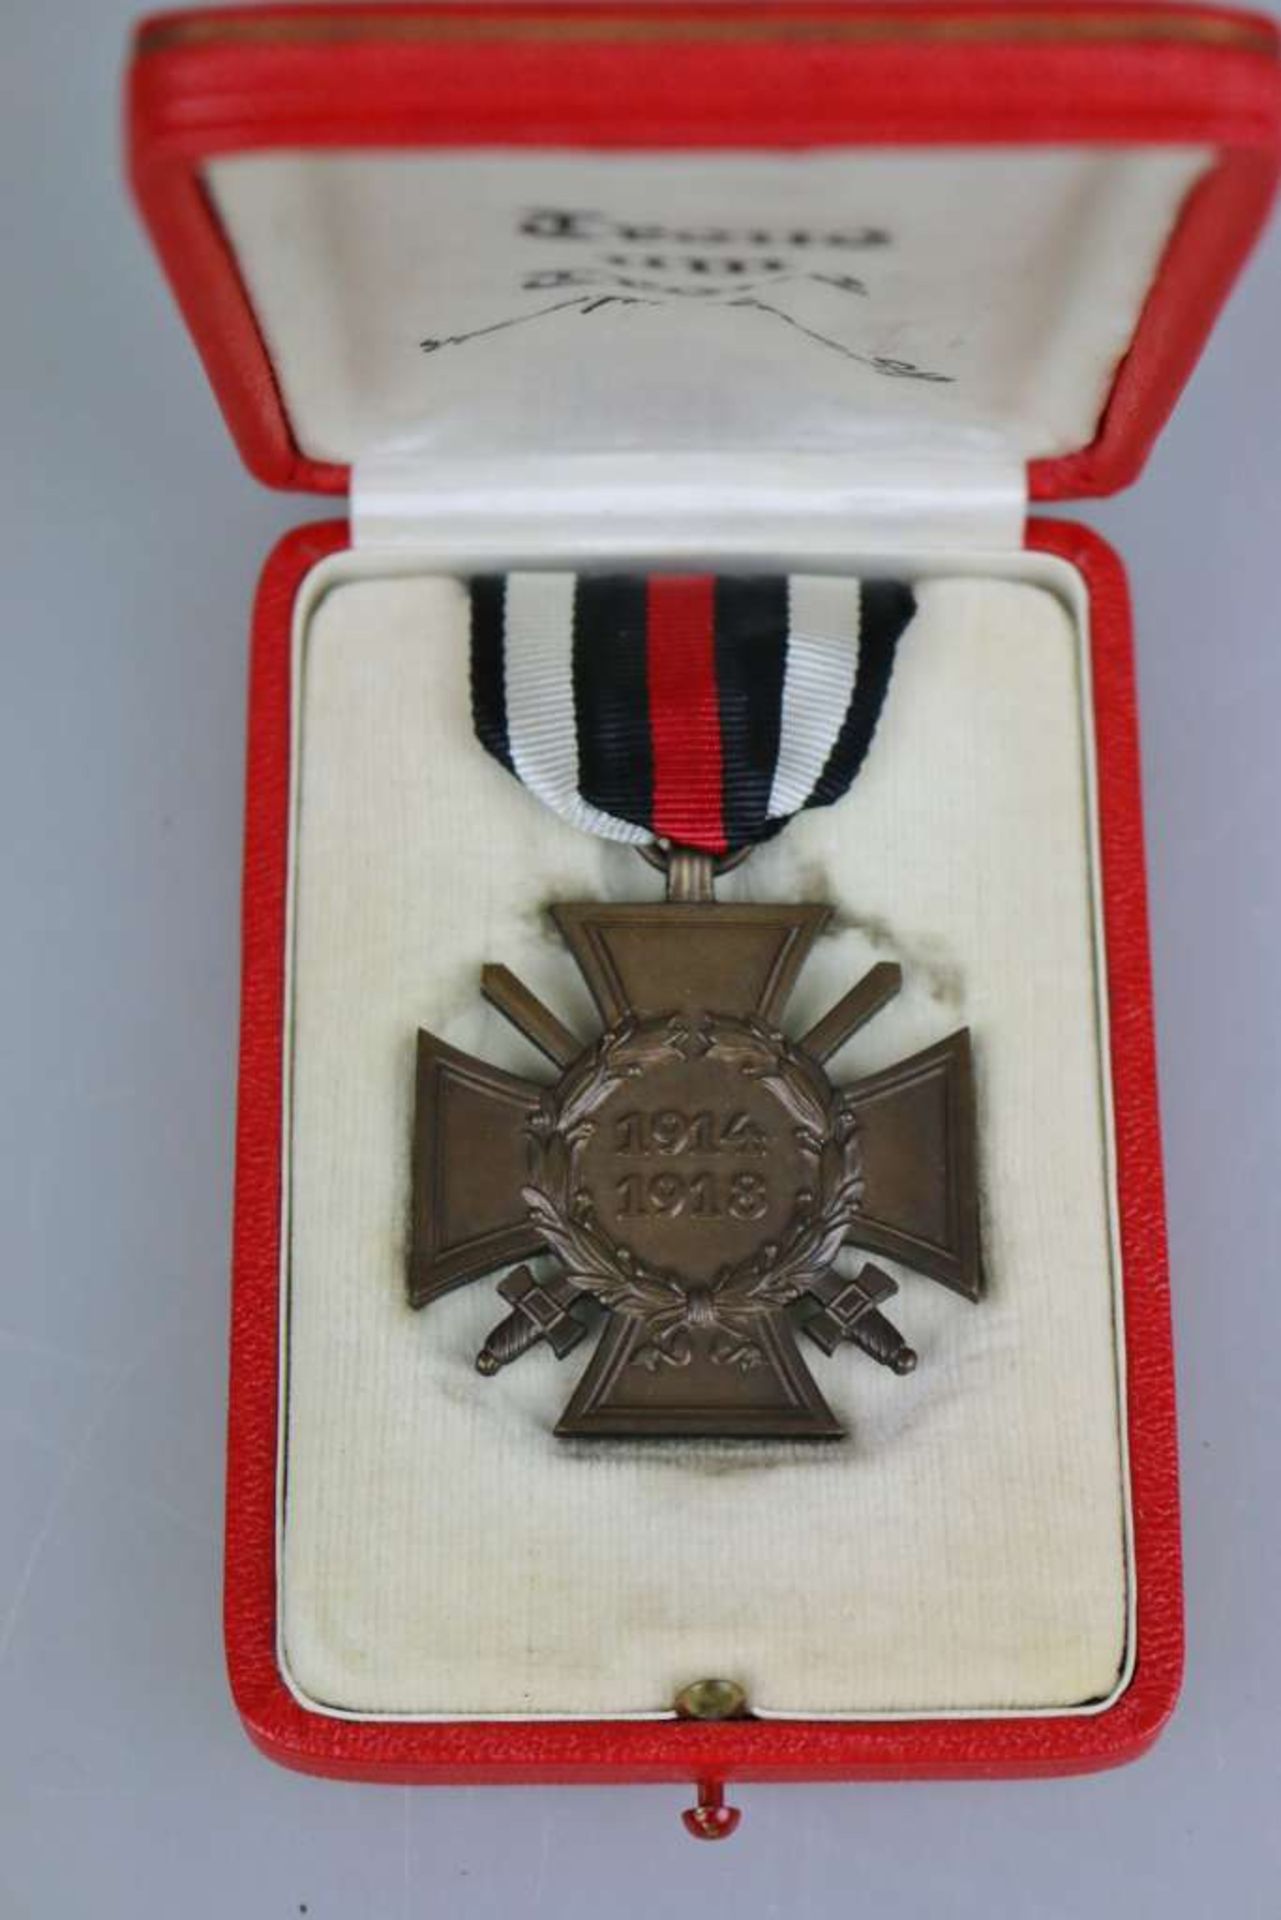 Frontkämpfer Ehrenkreuz im roten Etui, Innendeckel mit Inschrift "Treue um Treue" von Hindenburg, - Bild 2 aus 5